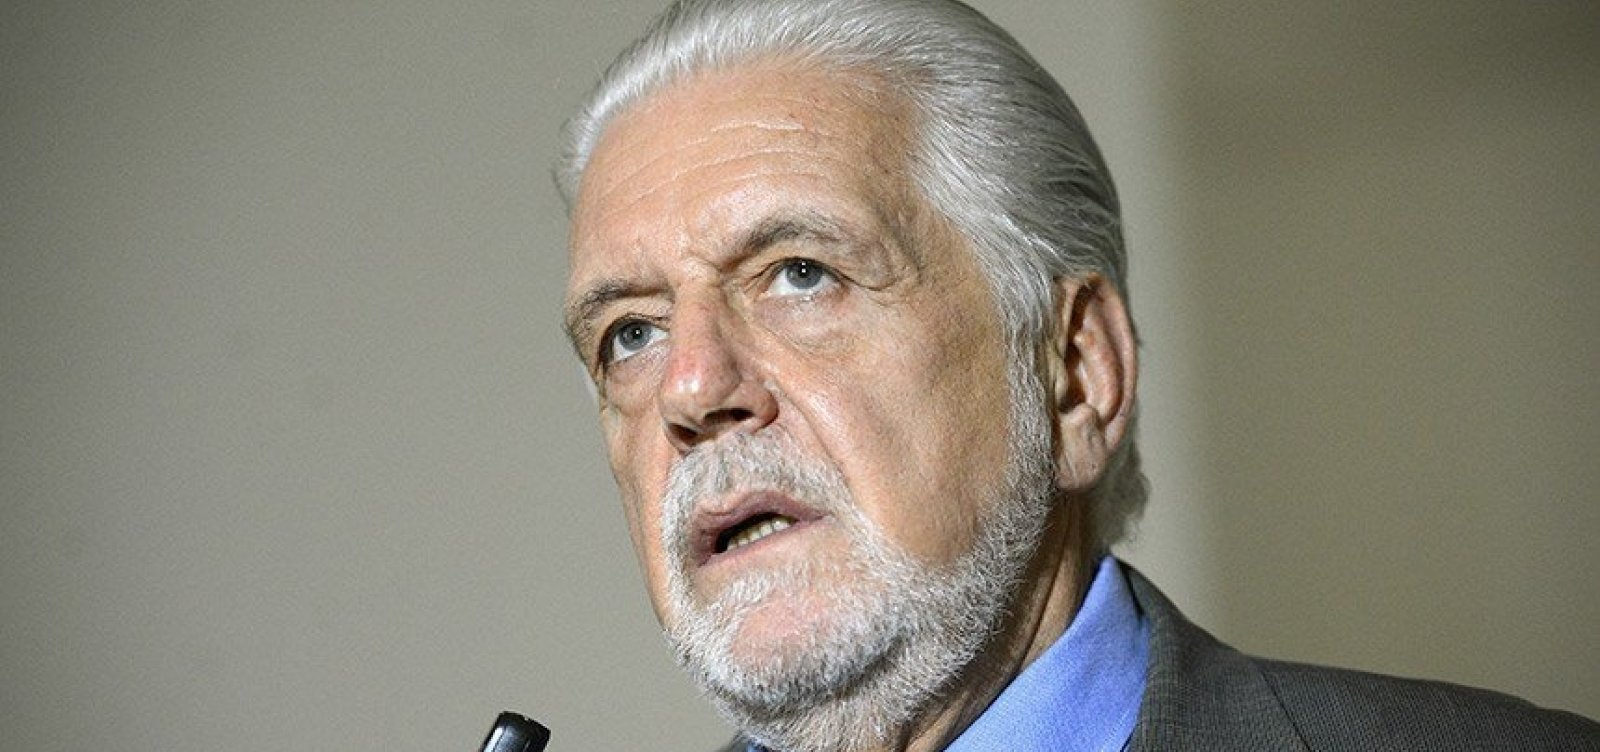 Wagner diz que chapa Lula-Alckmin definirá eleição em 2022, afirma coluna